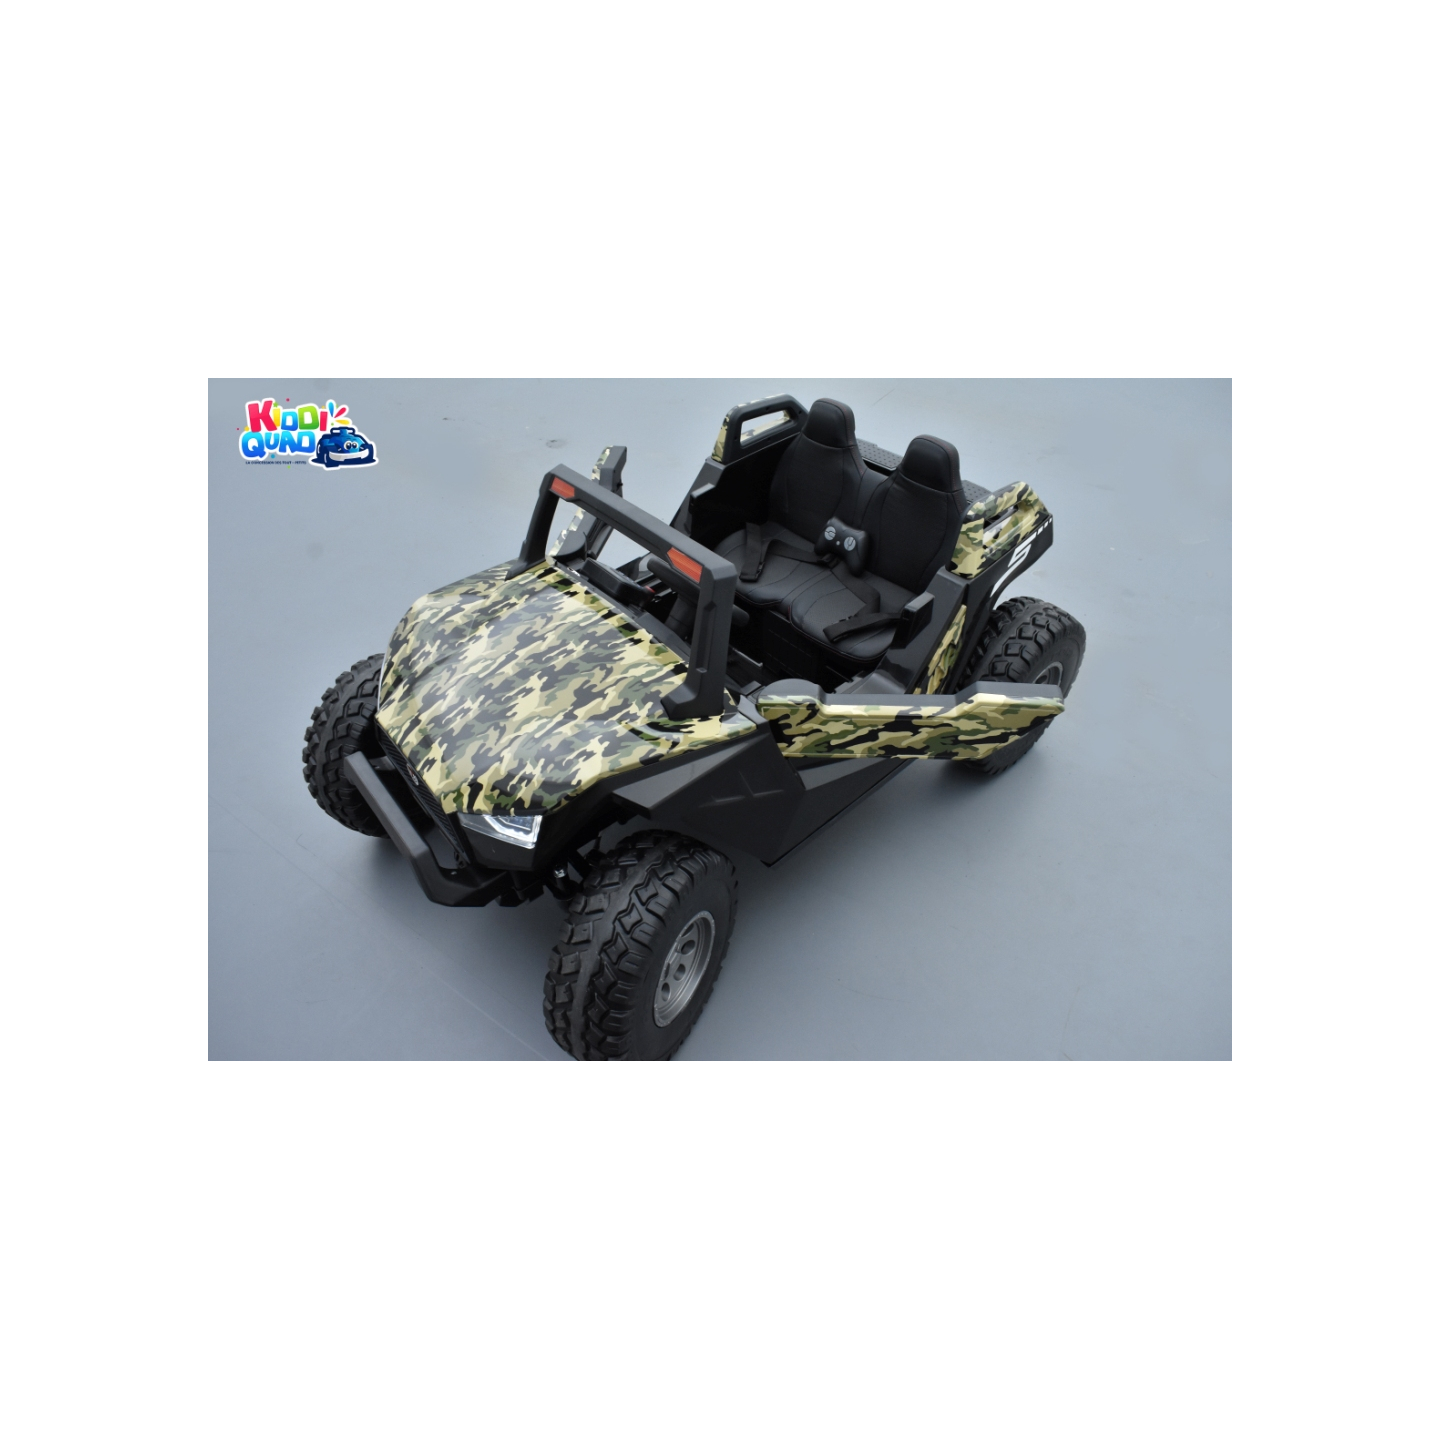 Buggy Crawler 24 Volts électrique enfant camouflage, buggy électrique enfant 24 Volts 7 Ah, 4 moteurs